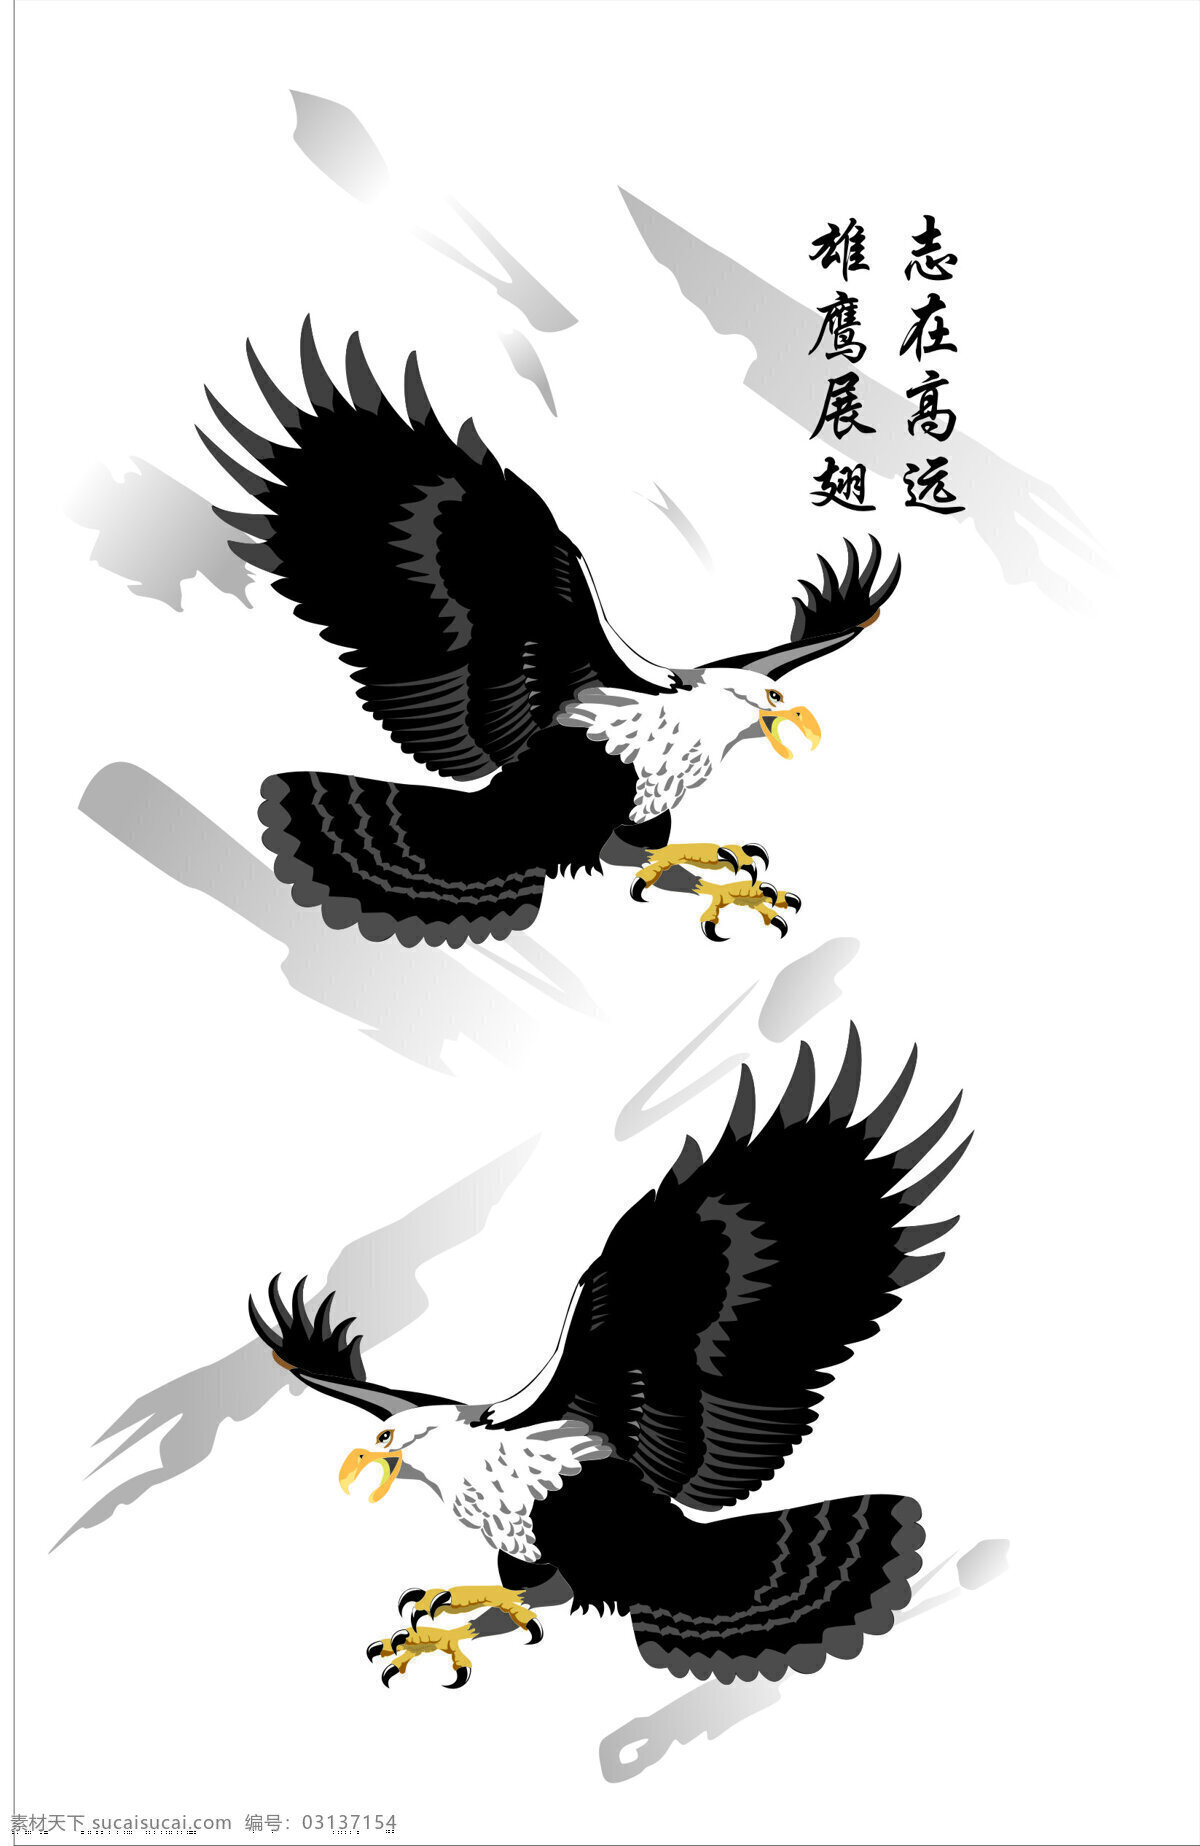 雄鹰展翅 雄鹰 墨迹 文化艺术 绘画书法 设计图库